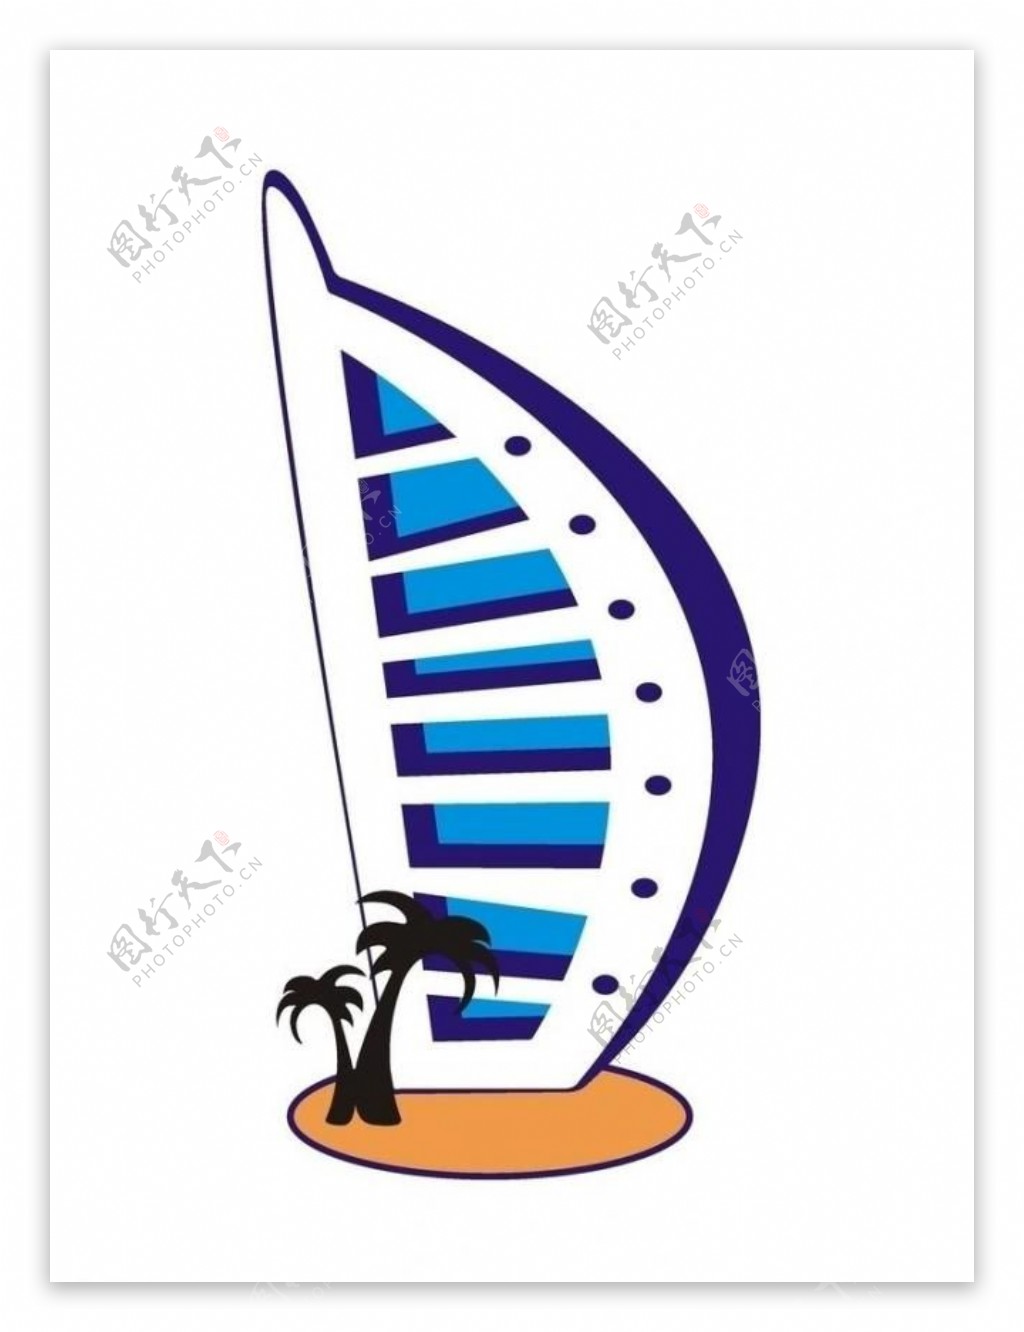 迪拜七星级帆船酒店矢量图片